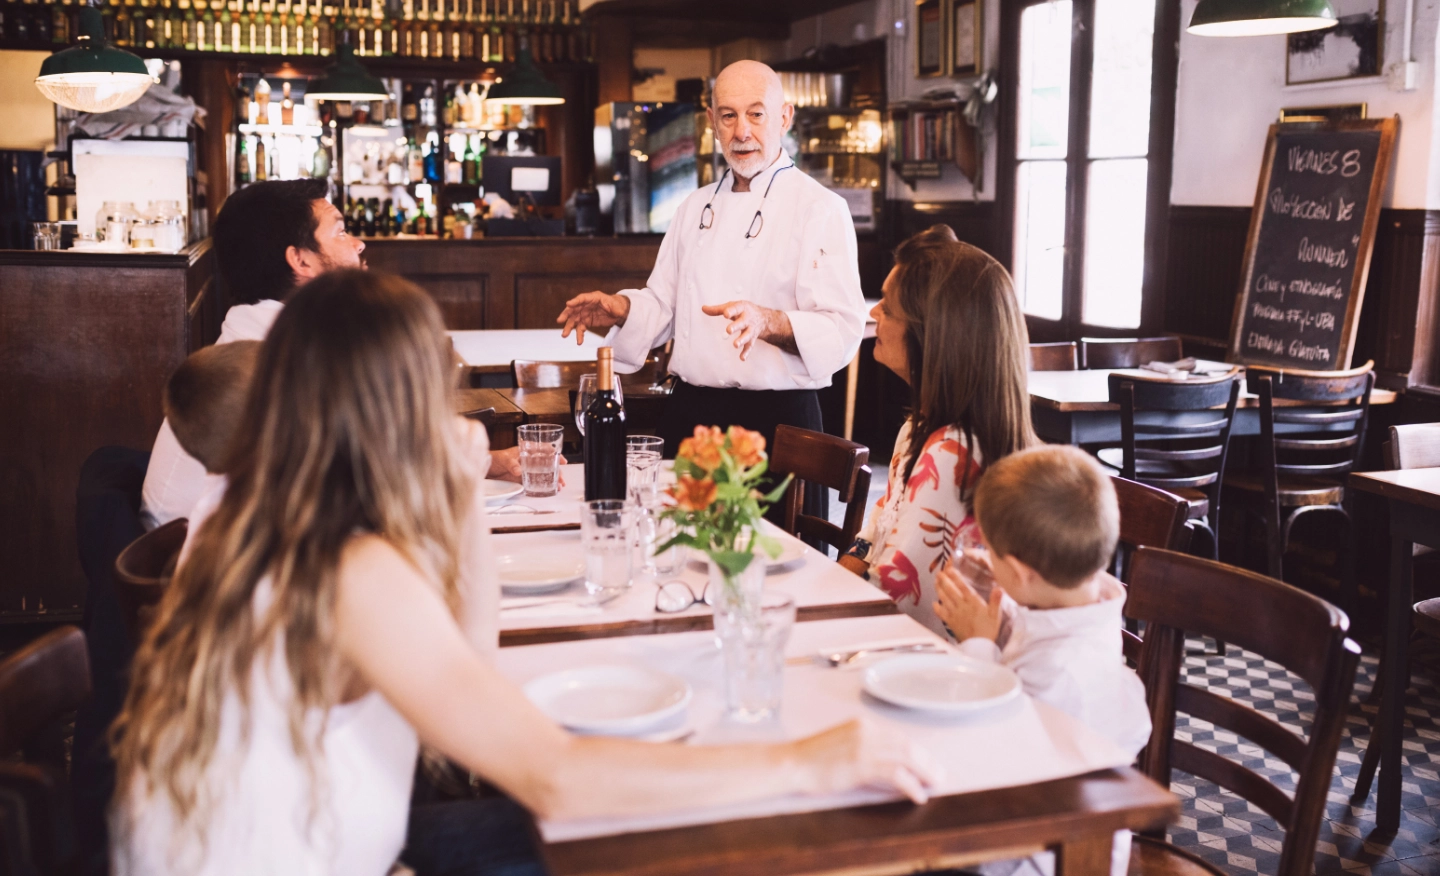 #BradescoAcessível #Pratodomundover Nas laterais, hágrafismos vermelhos. No centro, uma imagem de um chef de cozinha fazendo uma explicação para uma família sentada a mesa de um restaurante.